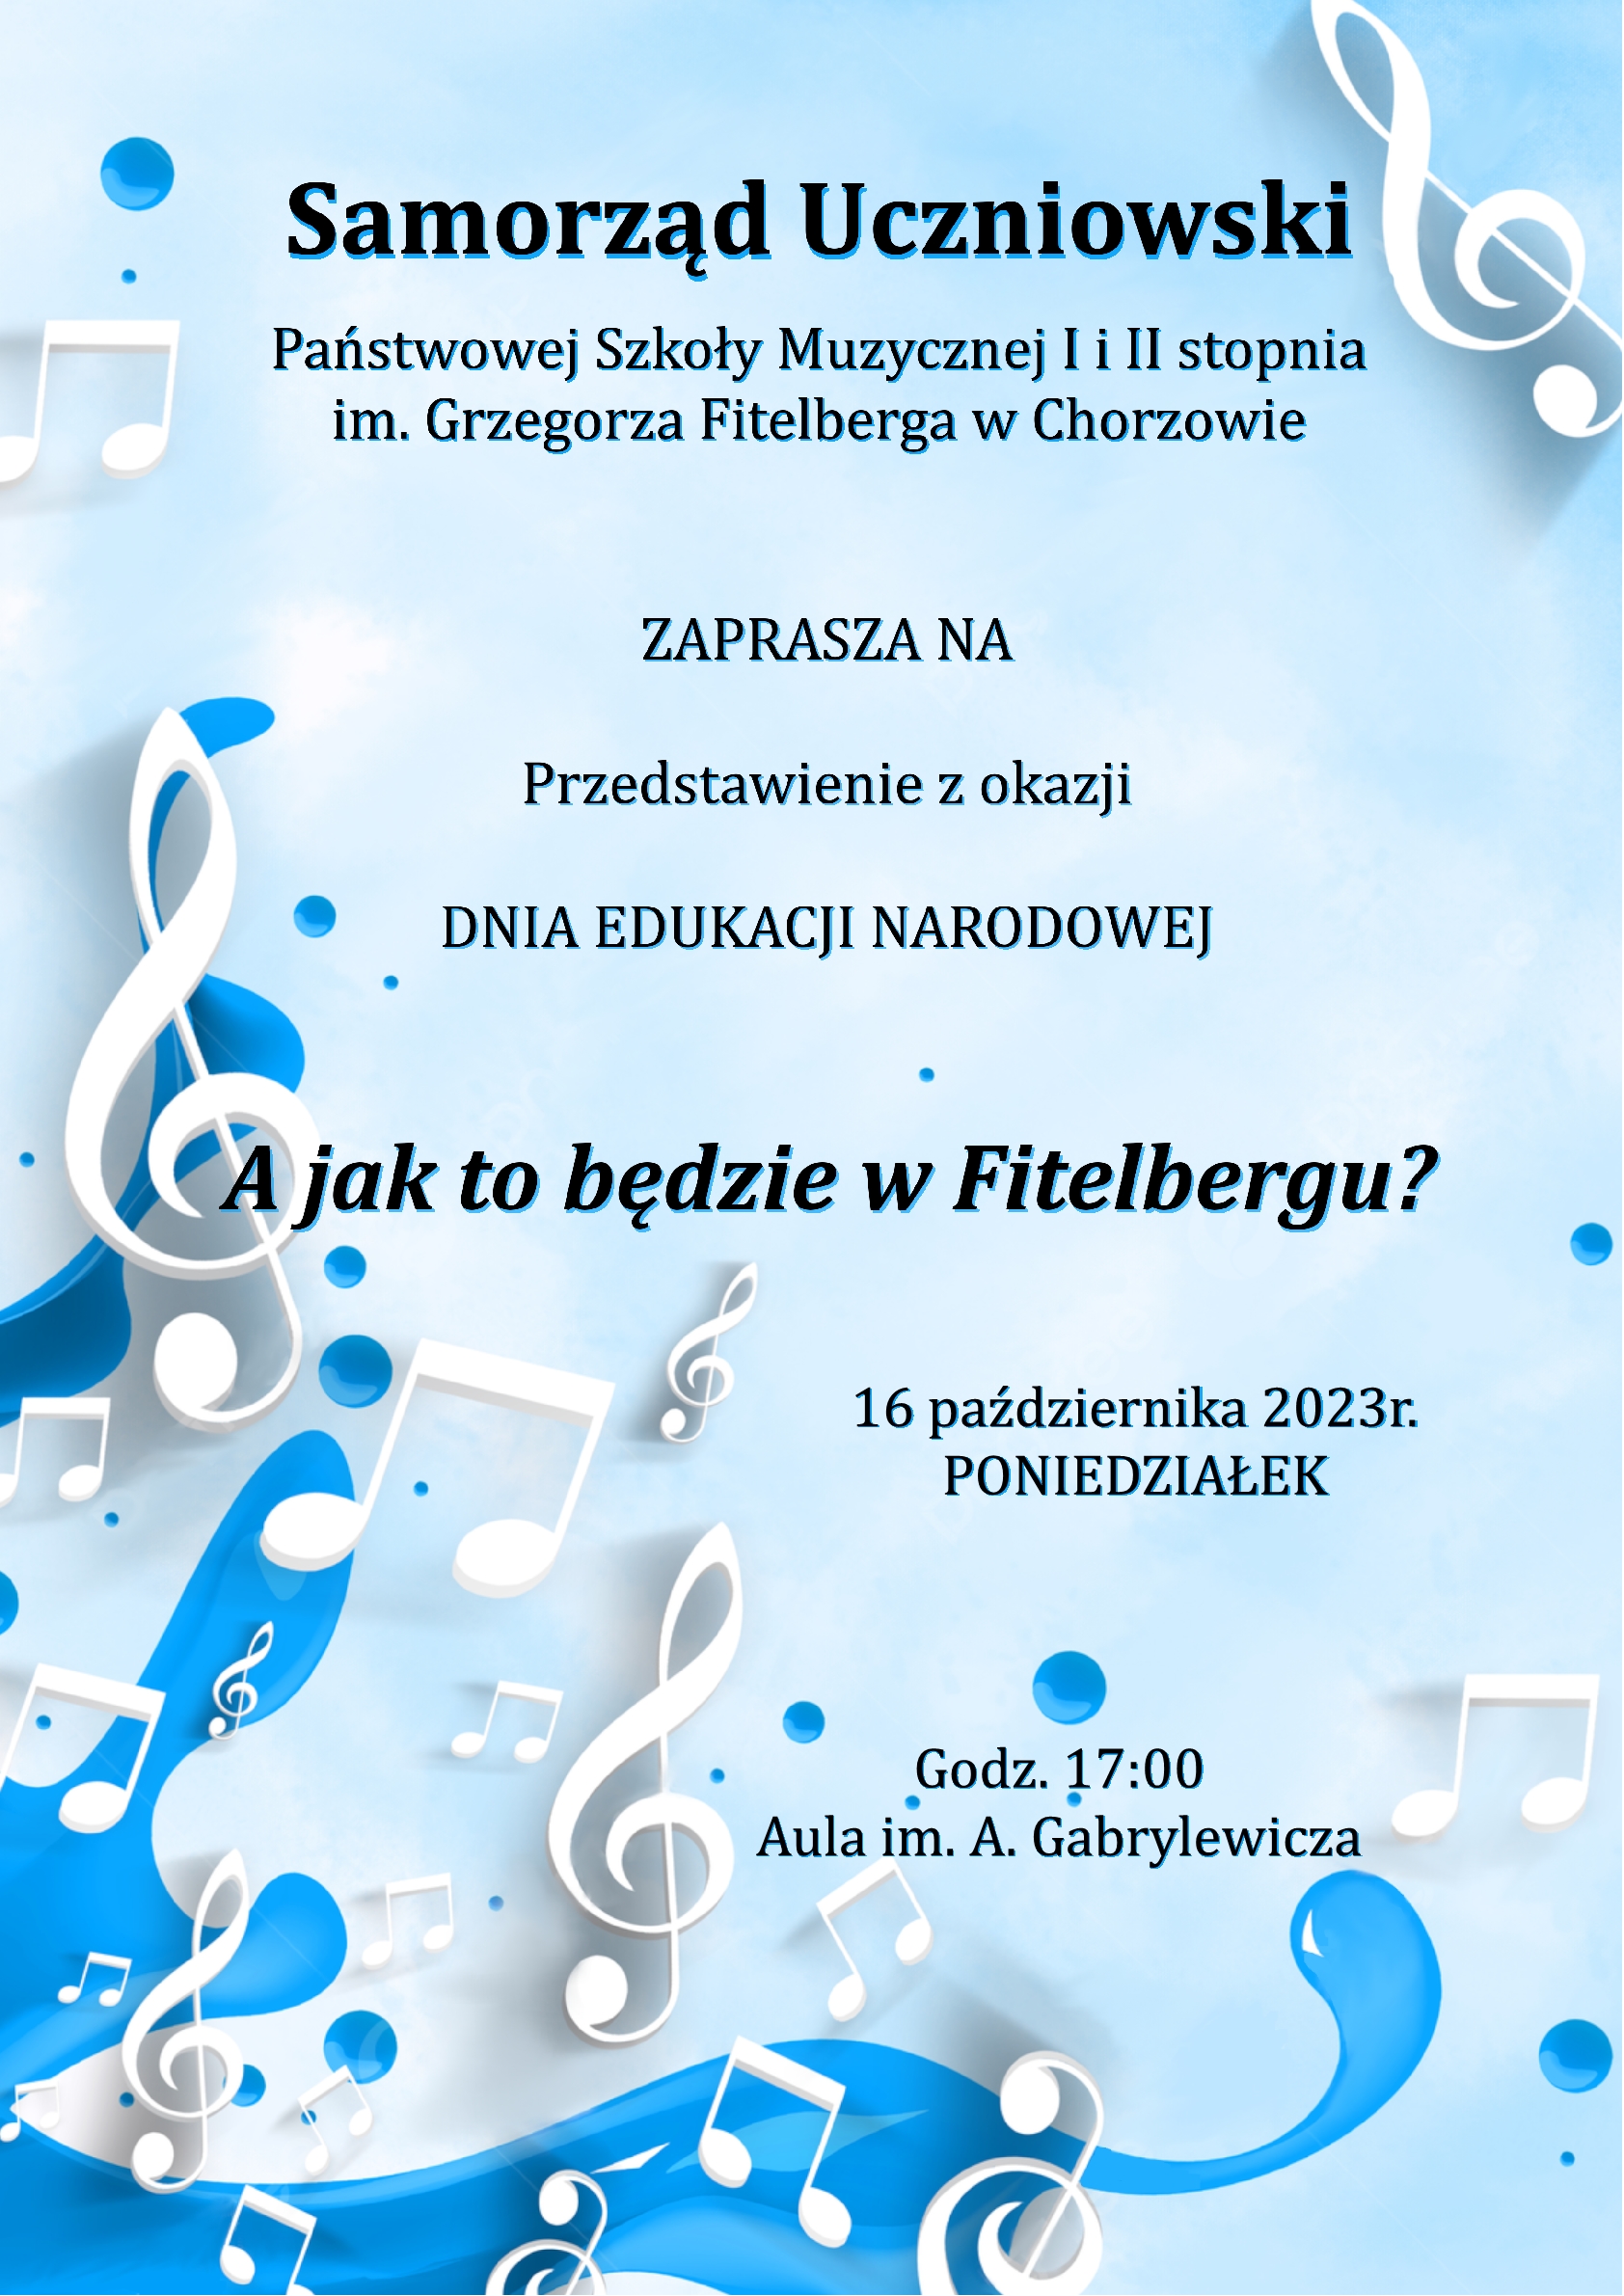 plakat informacją tekstową zapraszający na przedstawienie z okazji DEN organizowane przez Samorząd Uczniowski